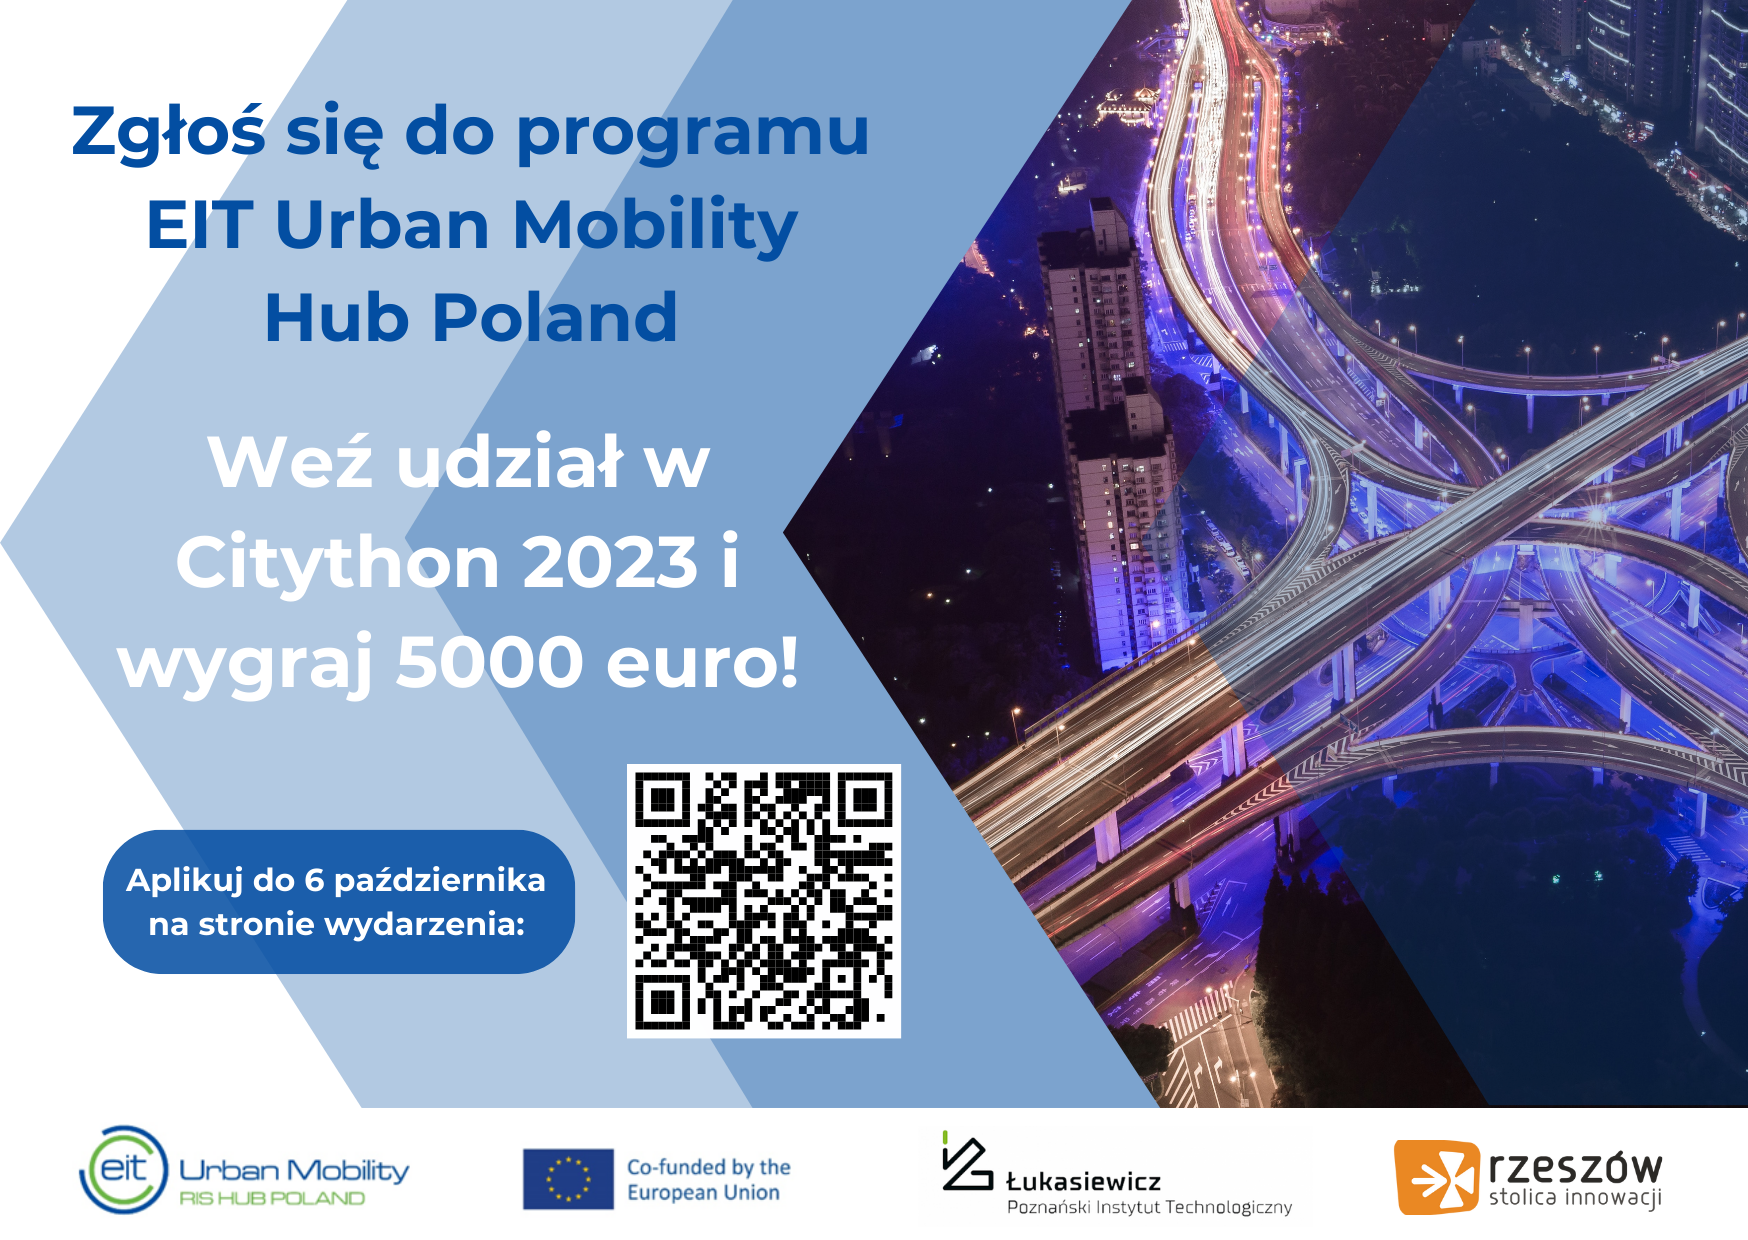 EIT Urban Mobility Hub Poland